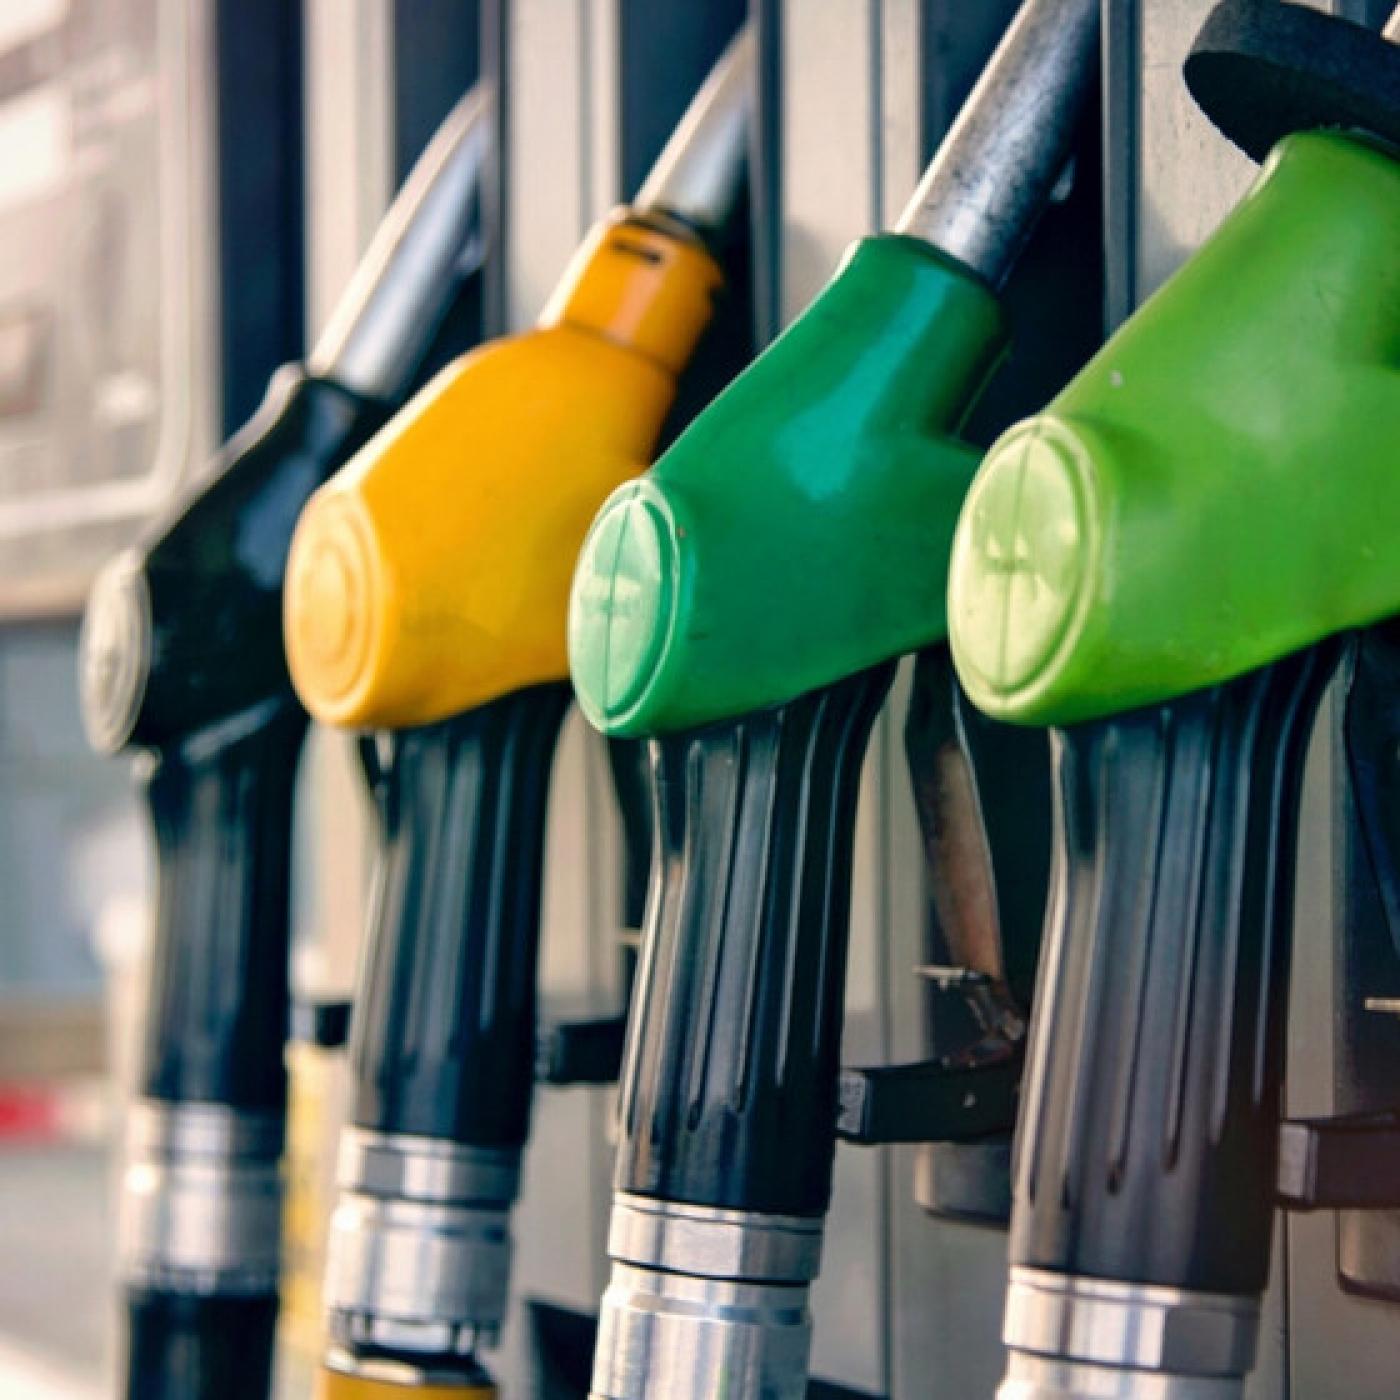 Les prix de l’essence continuent d’augmenter sur la Côte d’Azur